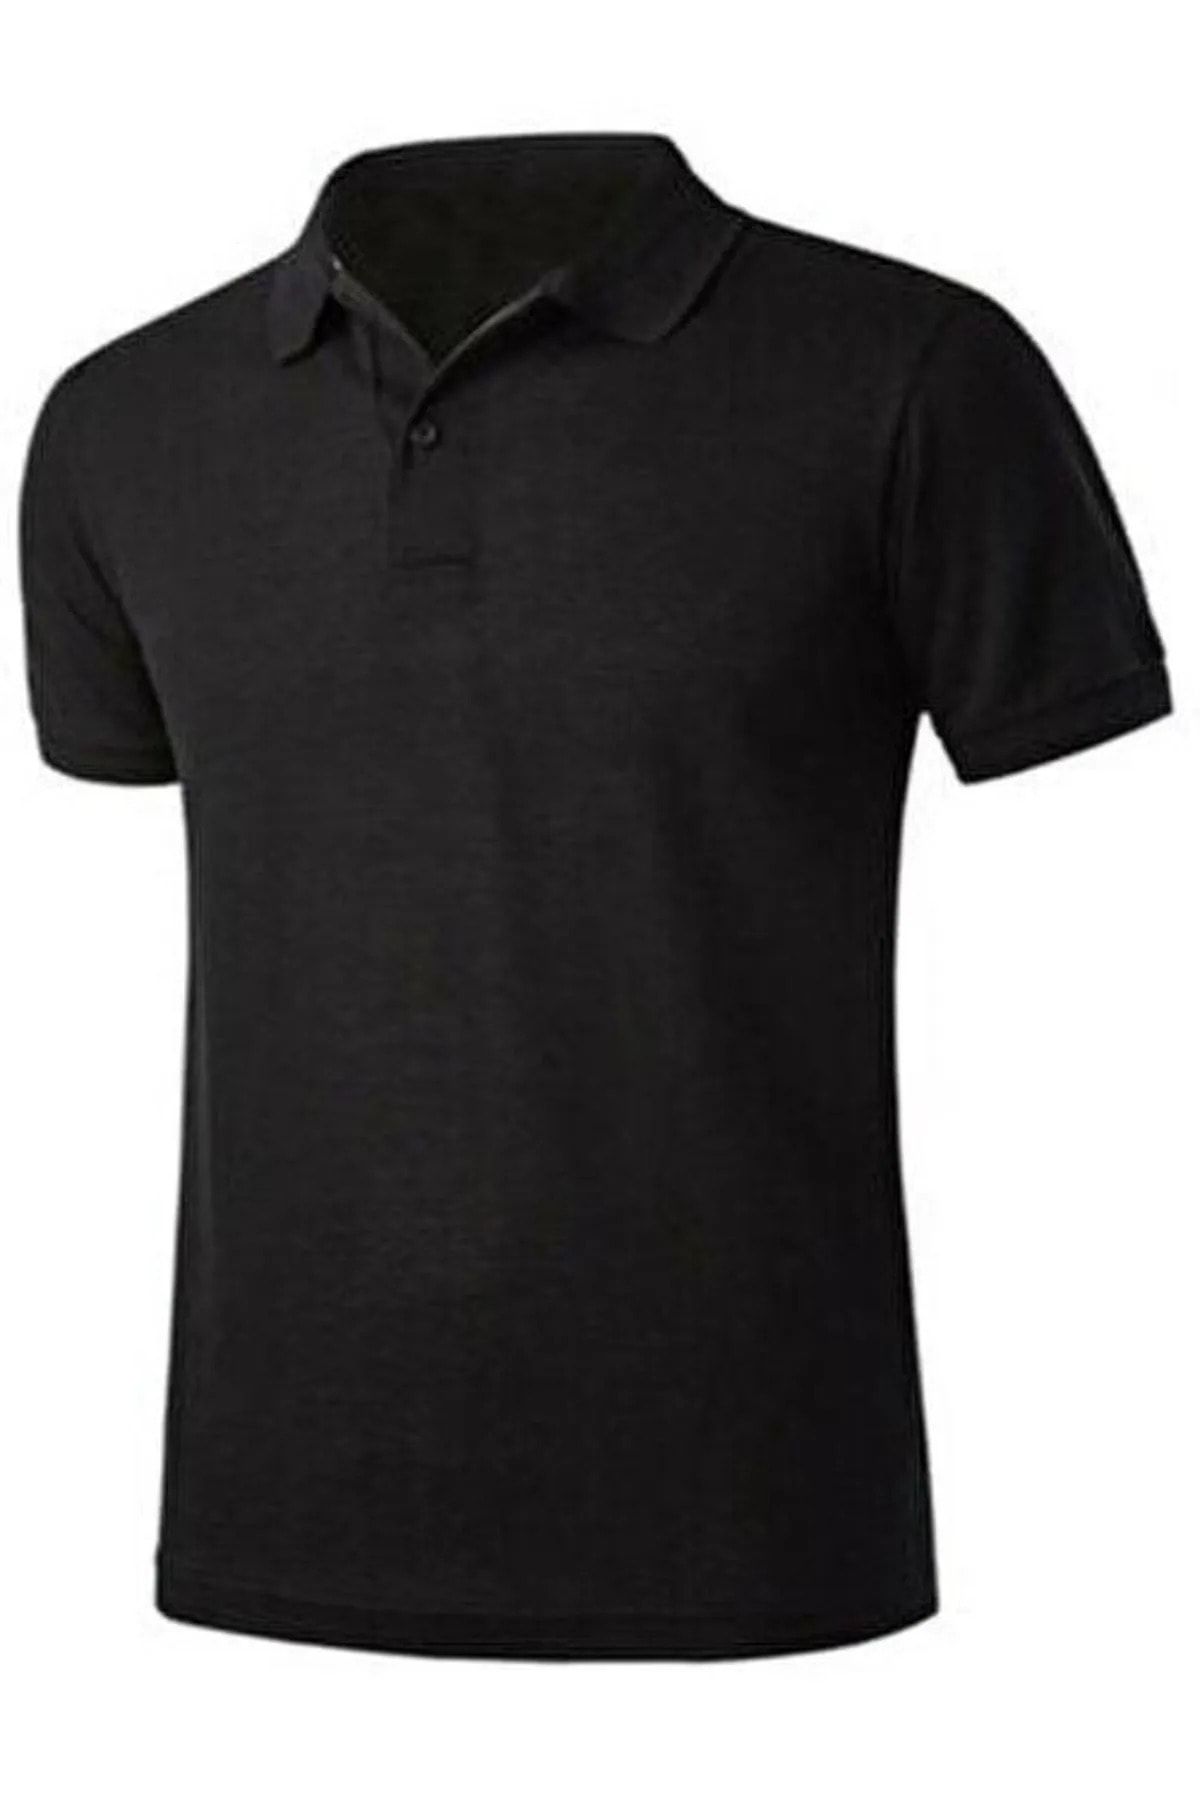 EKZMODA Erkek Siyah Slim Fit Polo Yaka T-shirt - Siyah Tisort - Erkek T-shirt